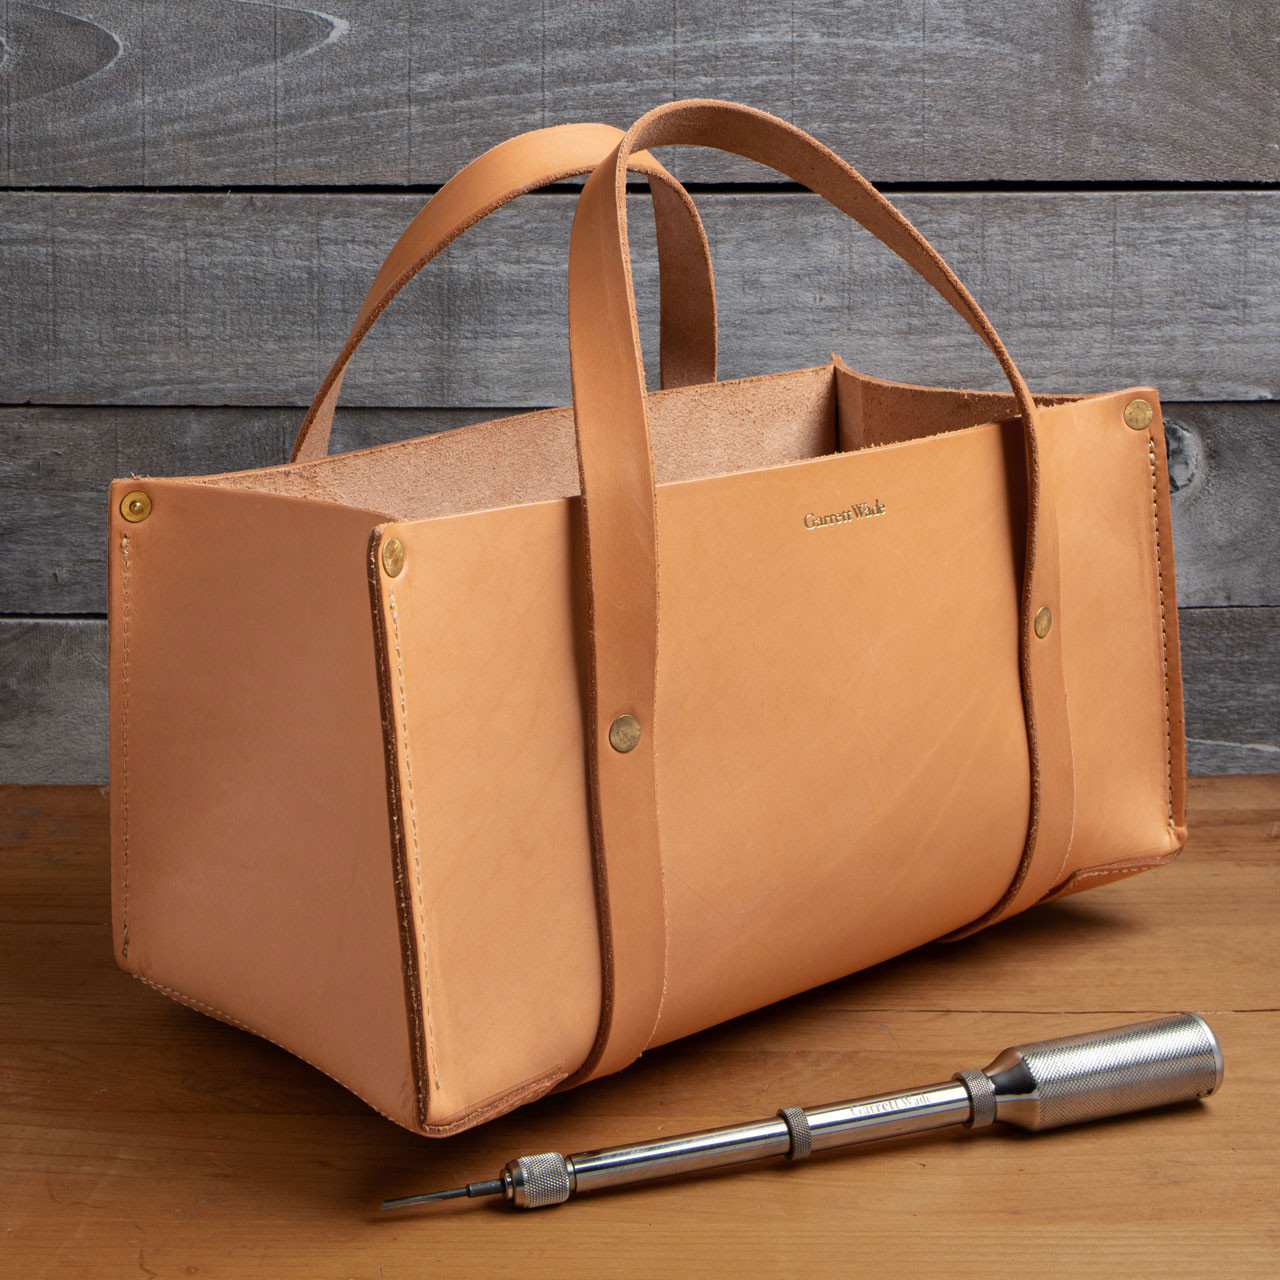 Portable Leather Tool Bag- Tan